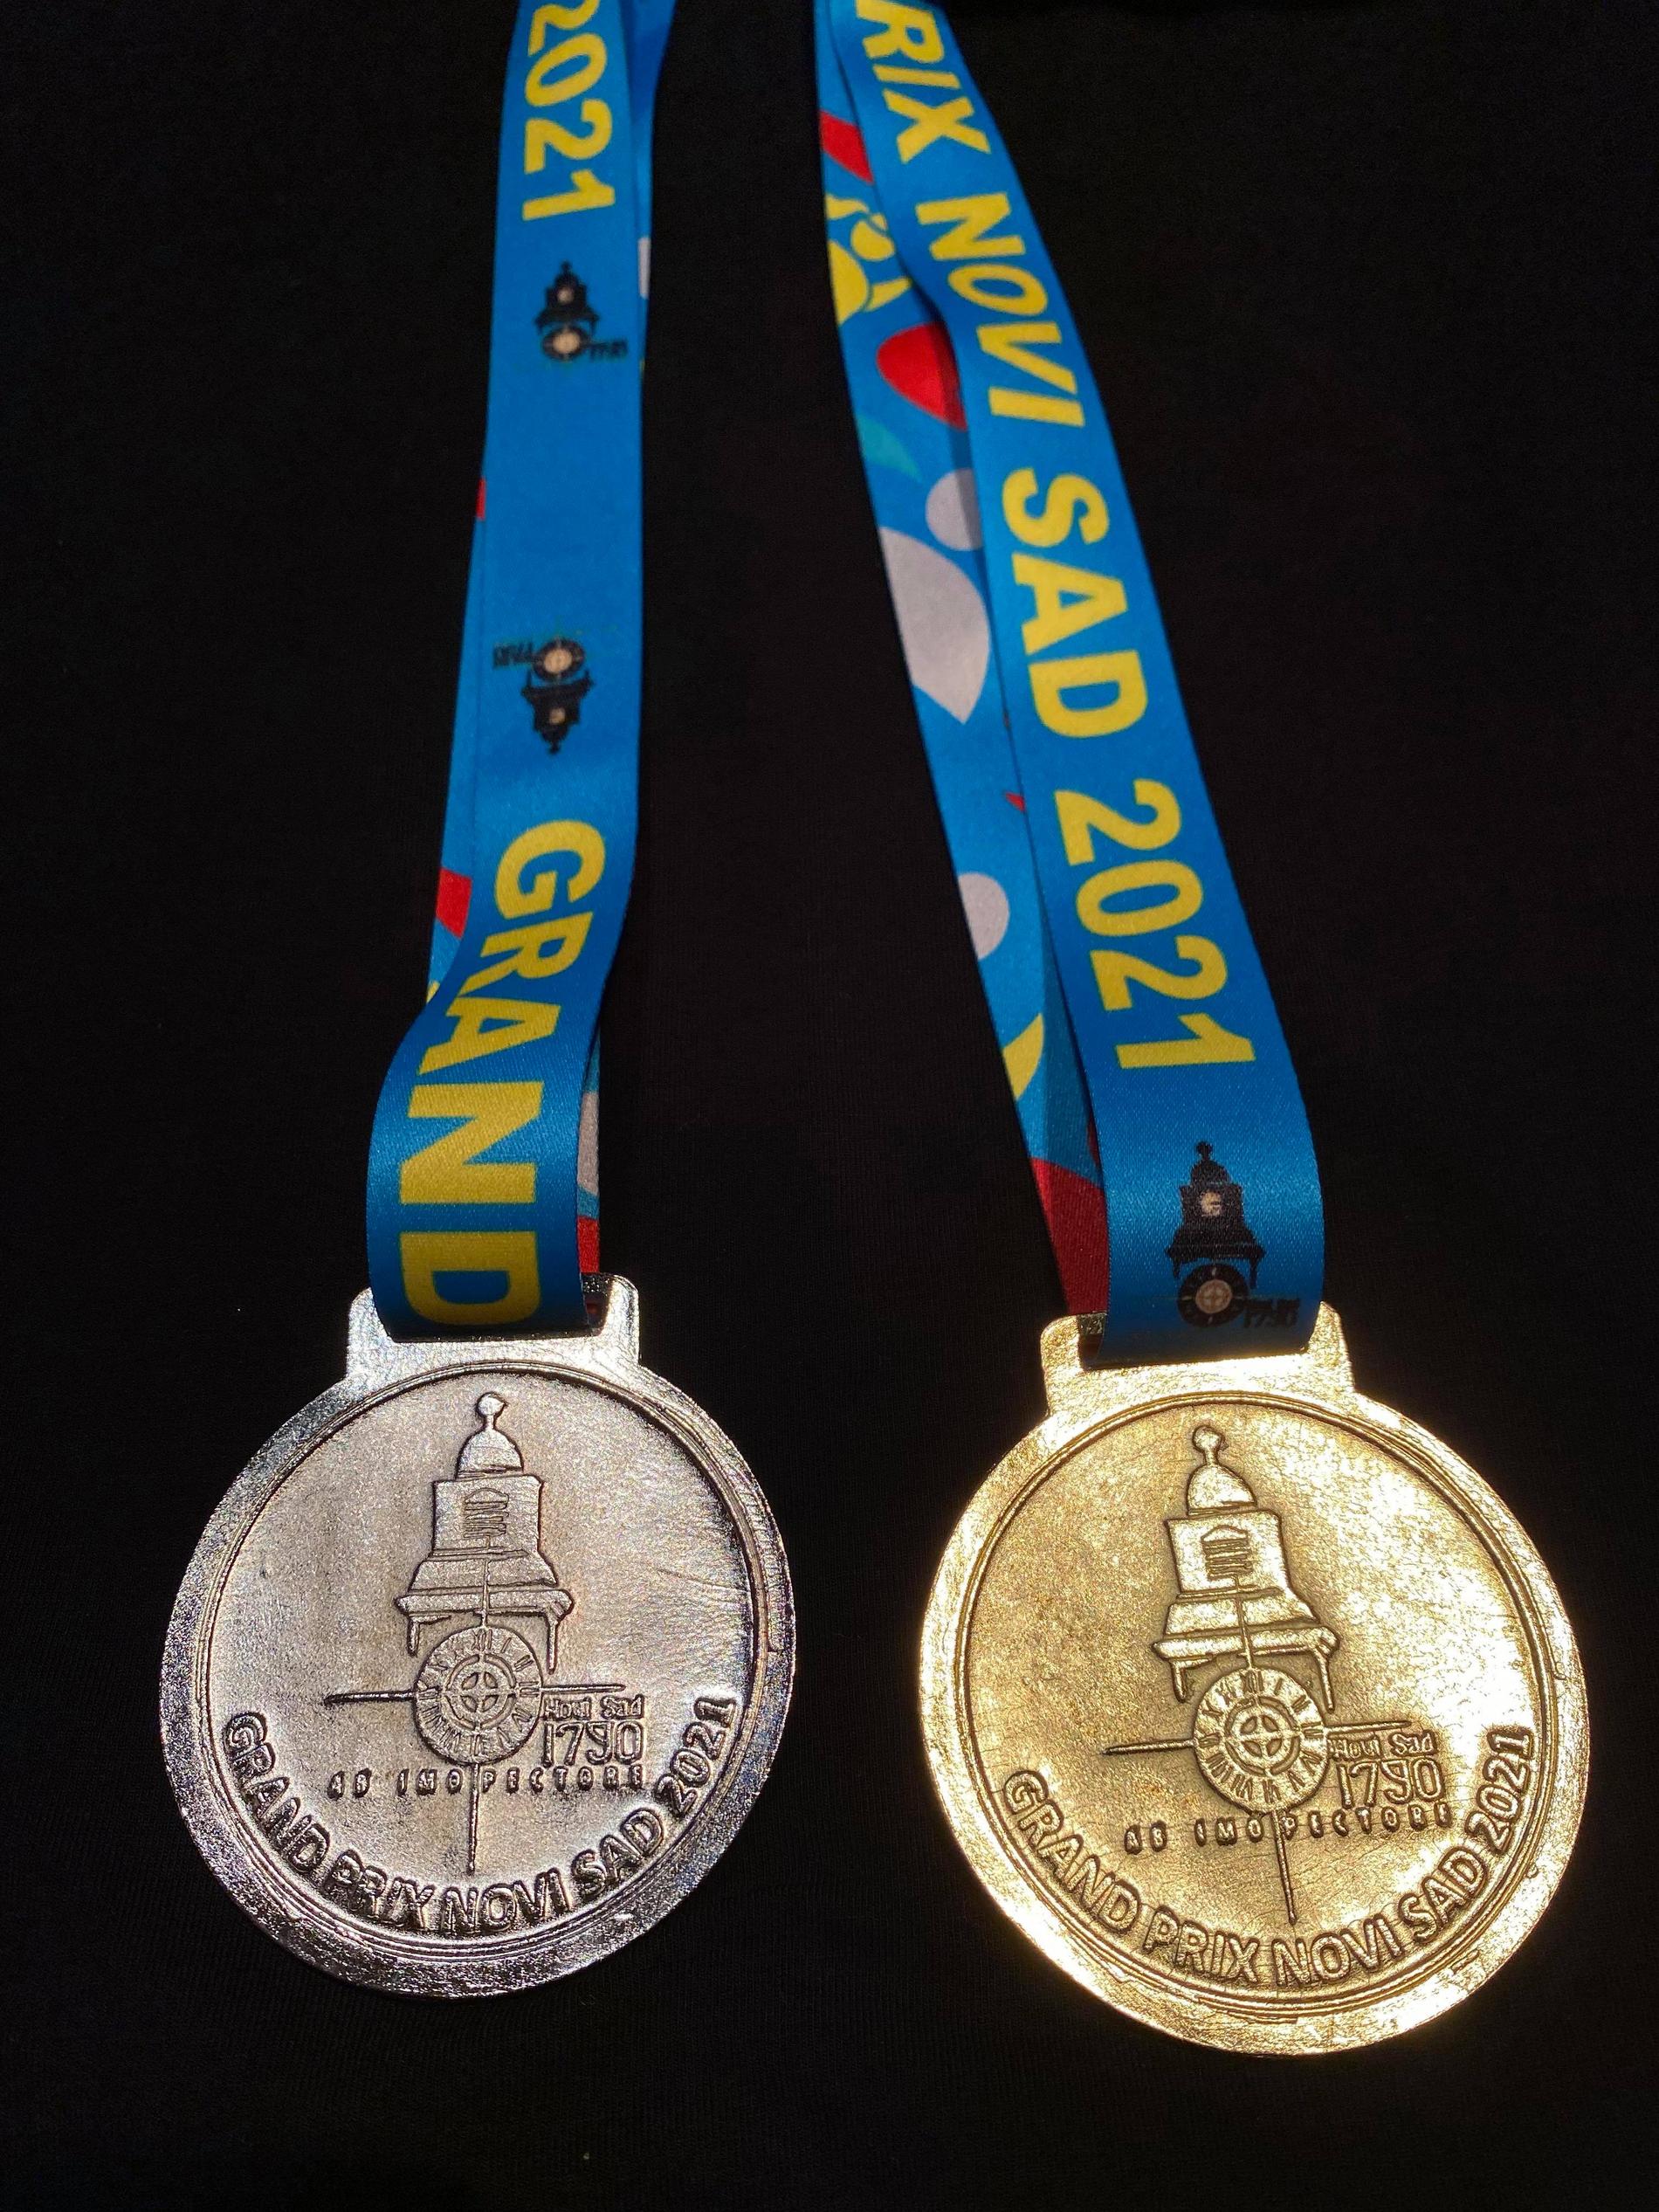 Guld och silver från Grand Prix i Serbien i juli.